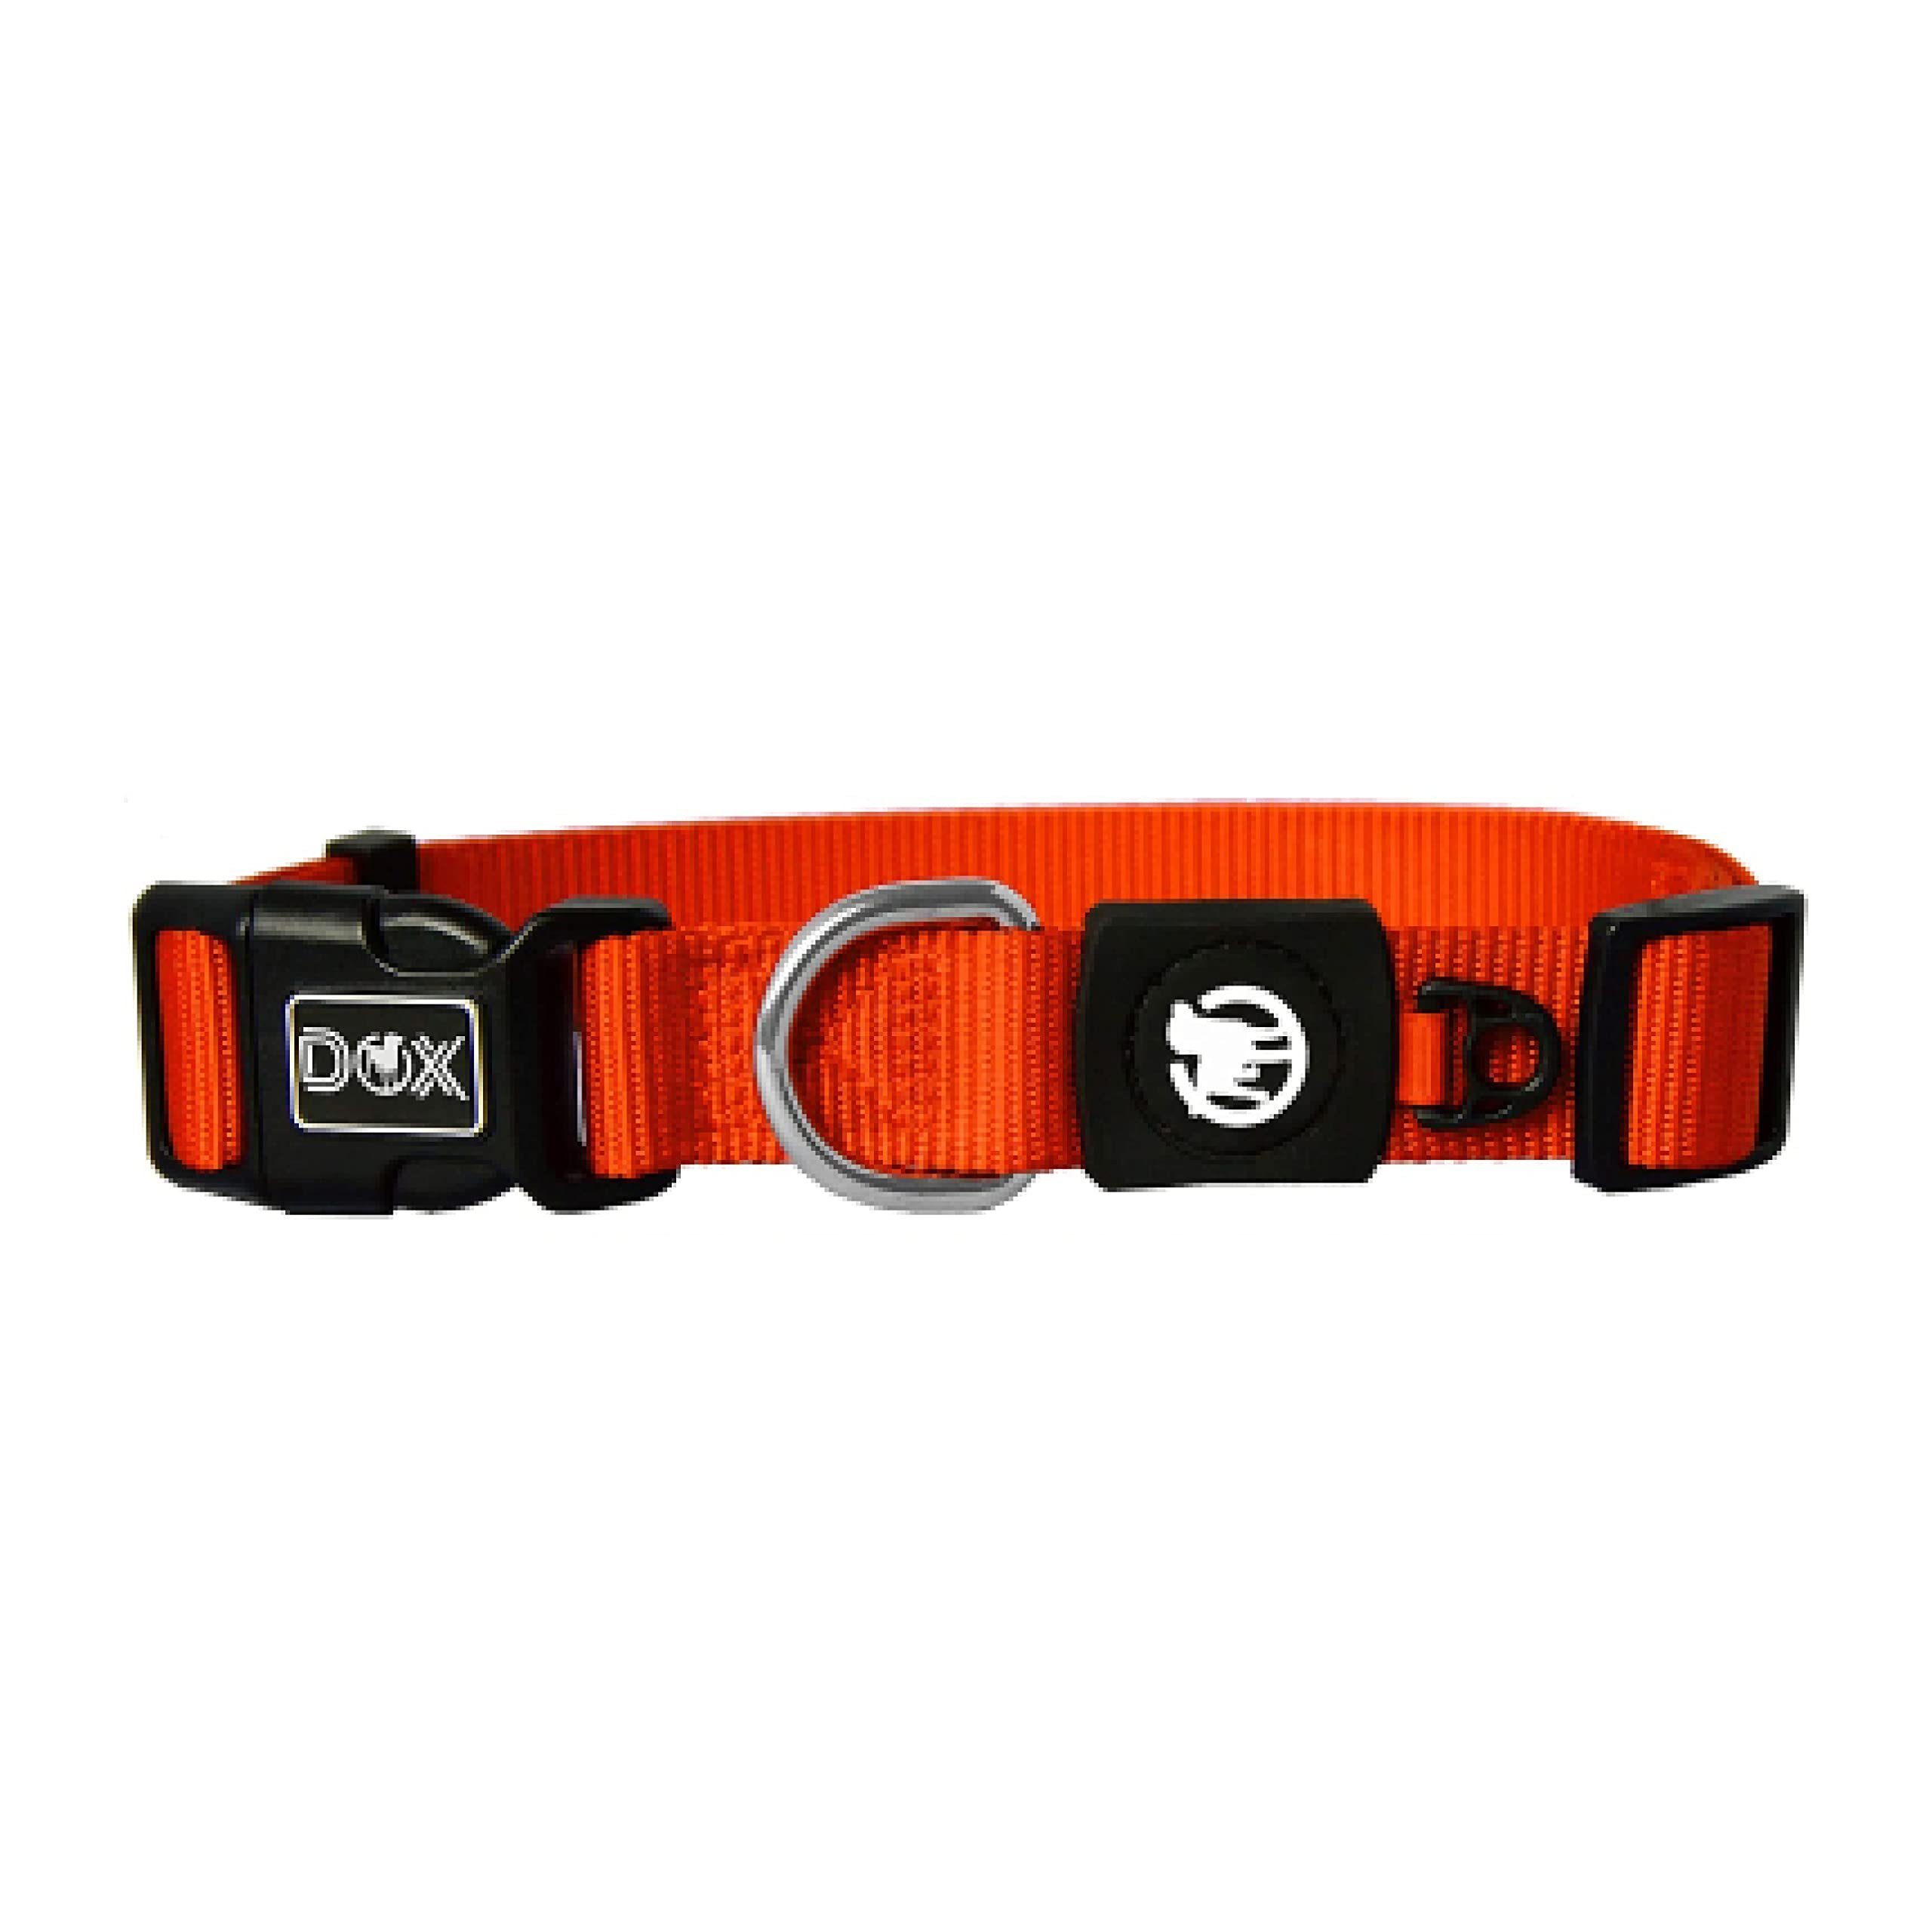 DDOXX Hunde-Halsband Nylon Hundehalsband, verstellbar, Orange M - 2,0 X 34-49 Cm